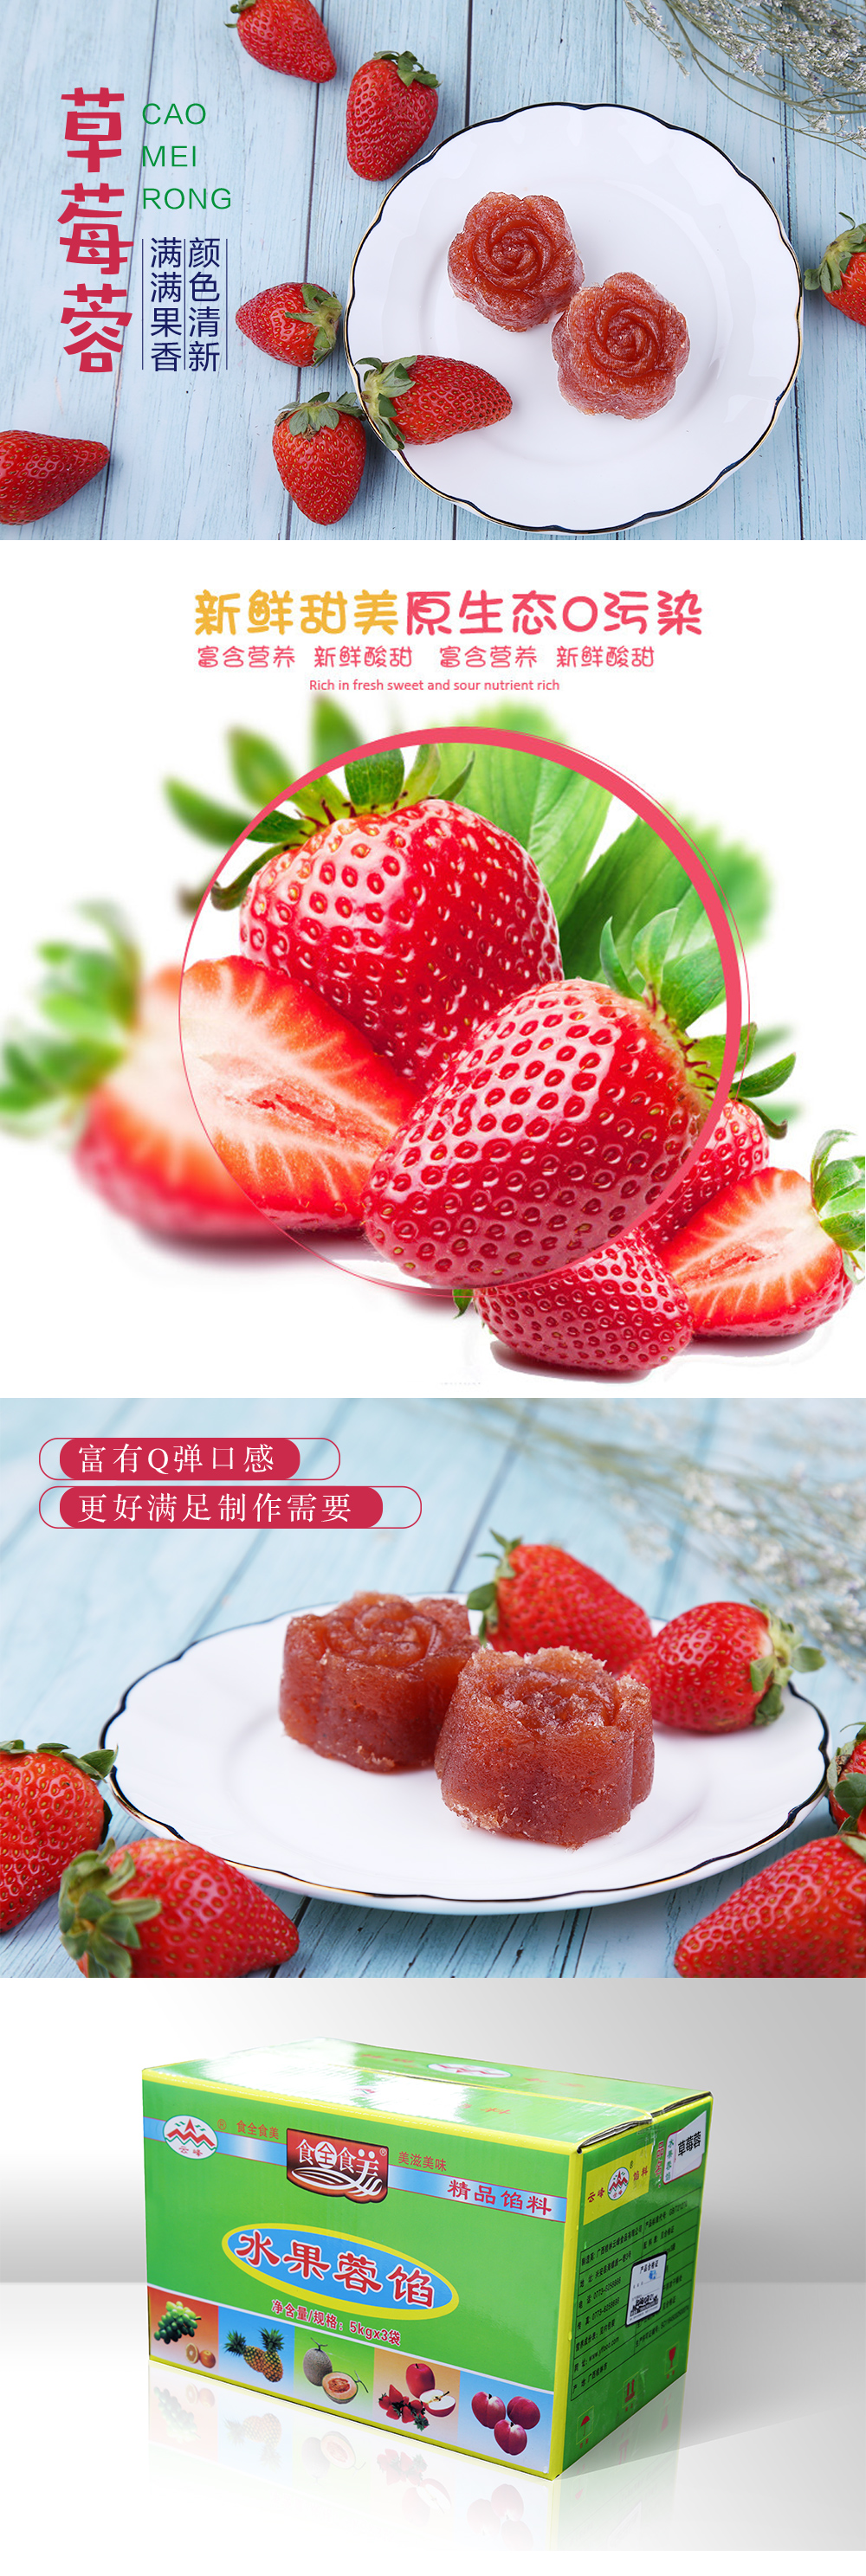 草莓蓉.jpg